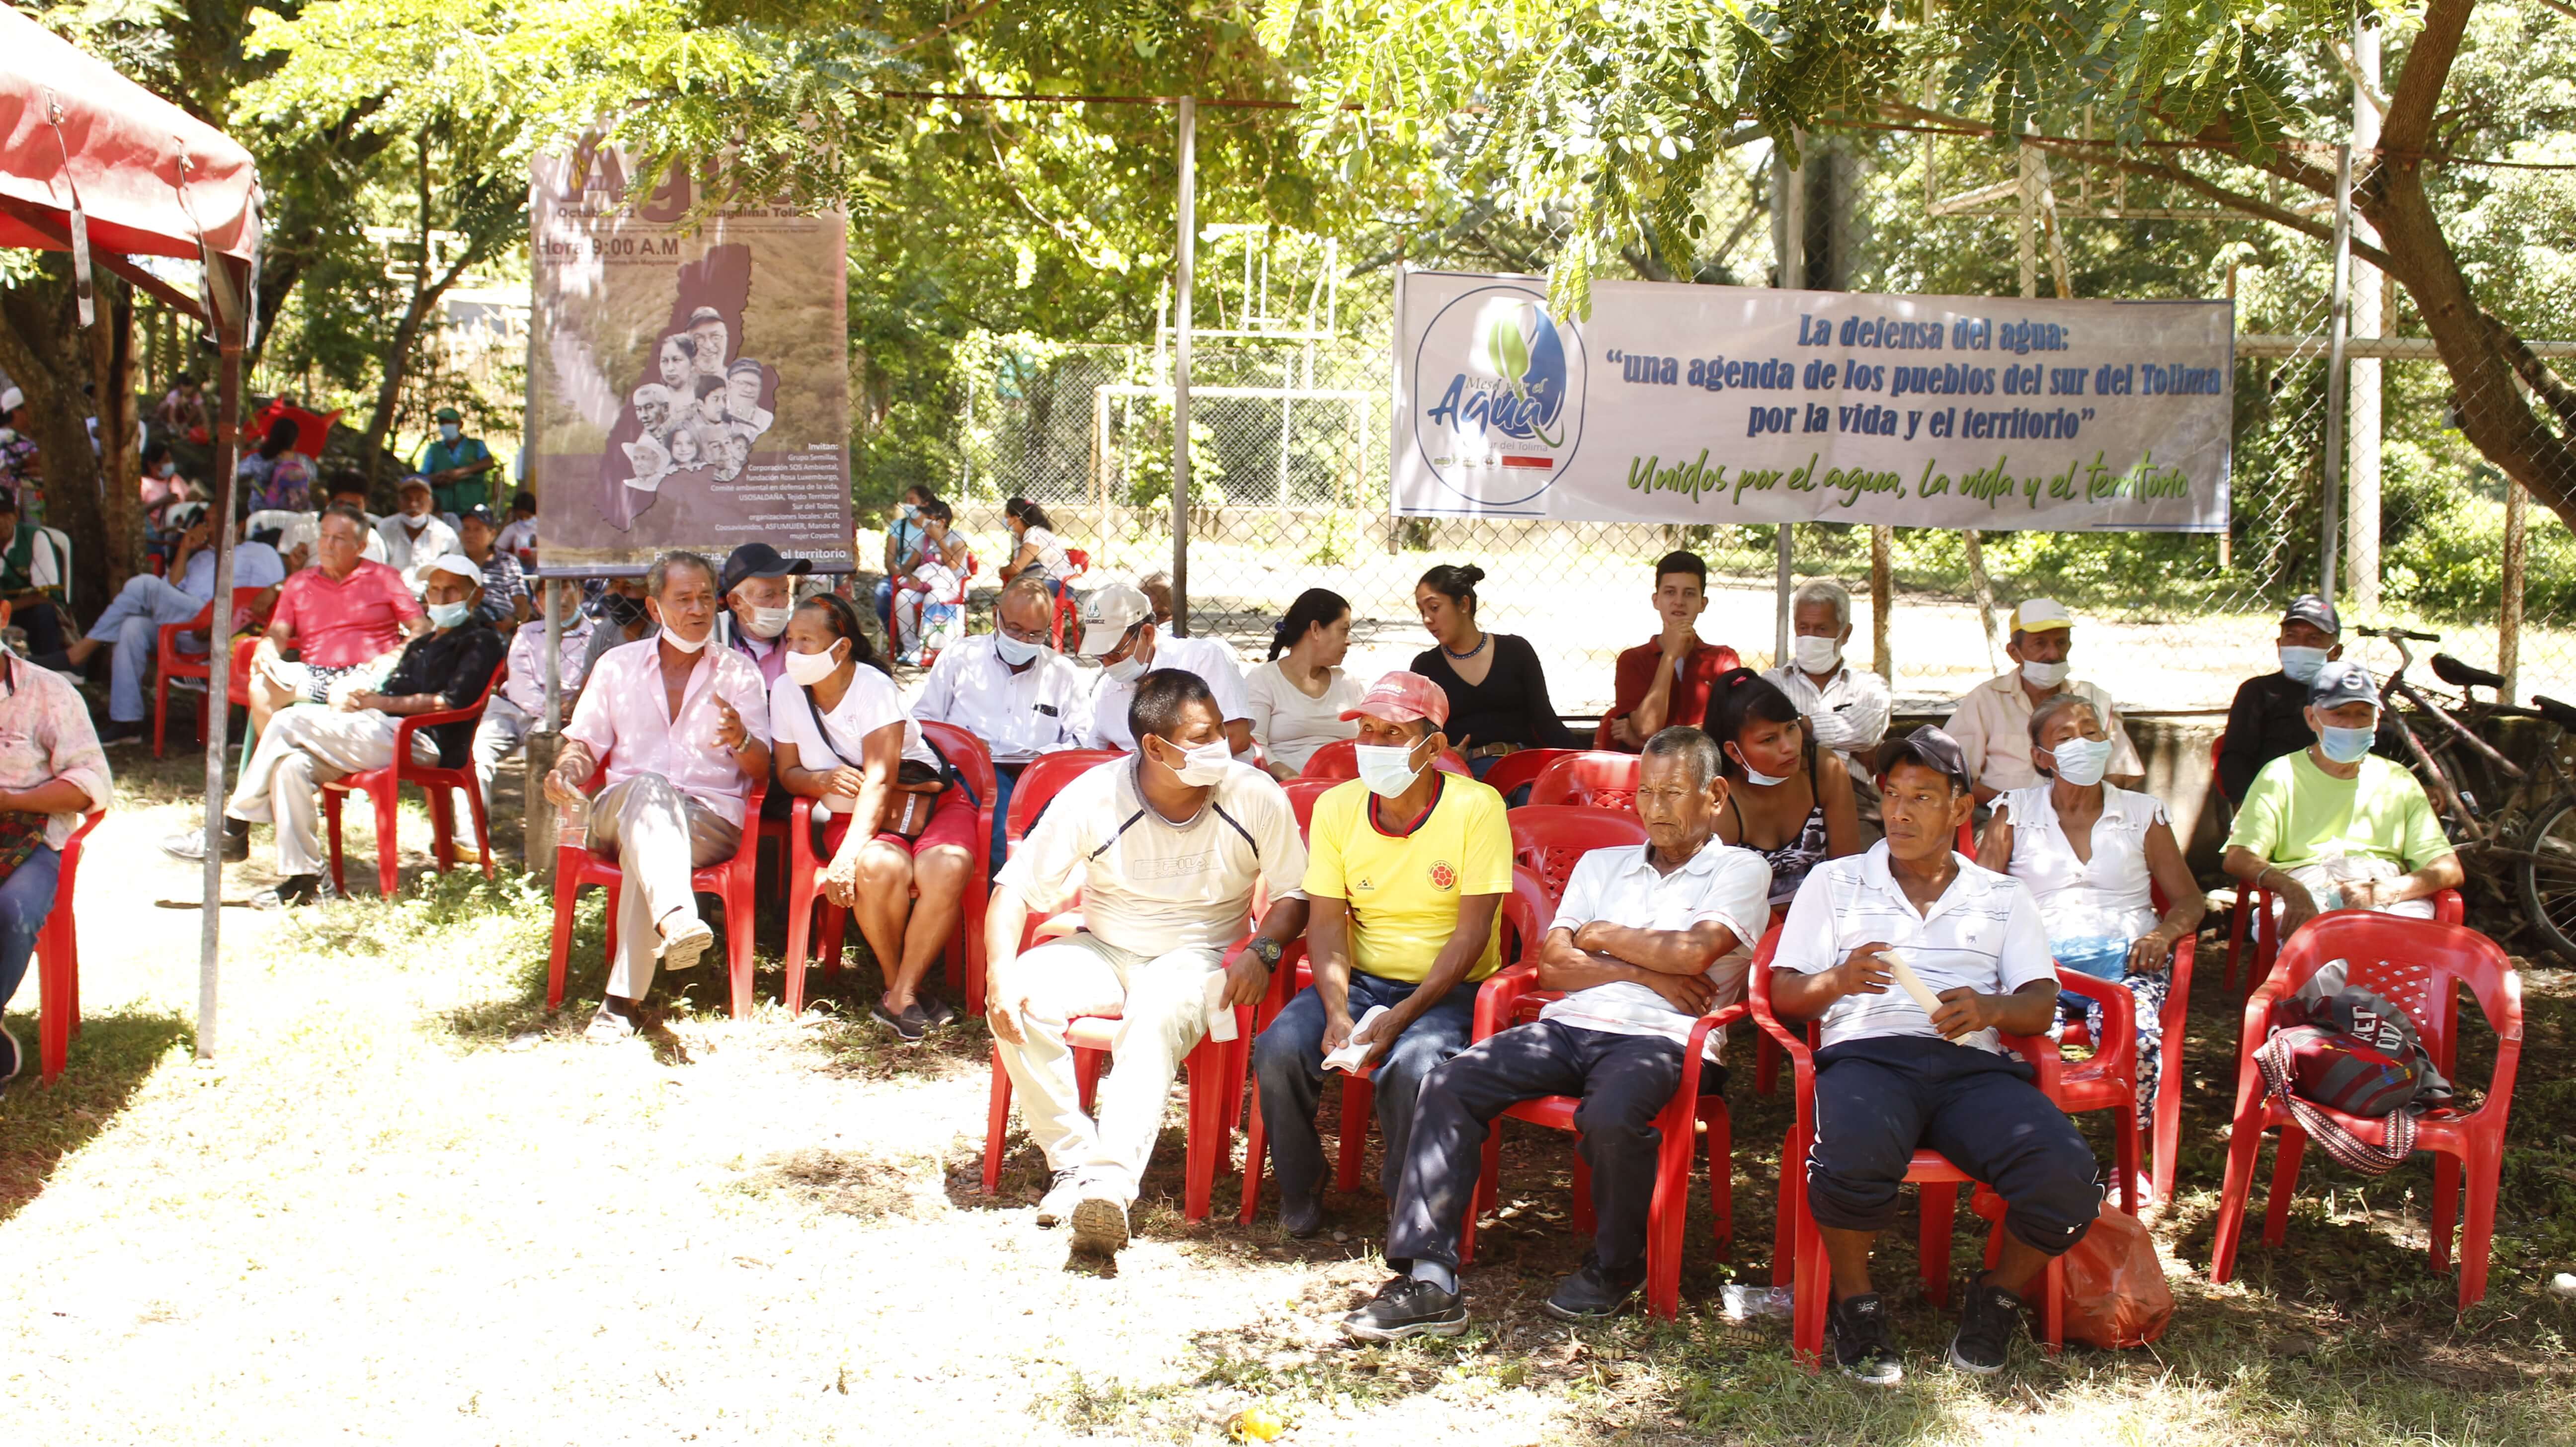 Grafica alusiva a Foro: Defensa del agua, una agenda de los pueblos del sur del Tolima por la vida y el territorio